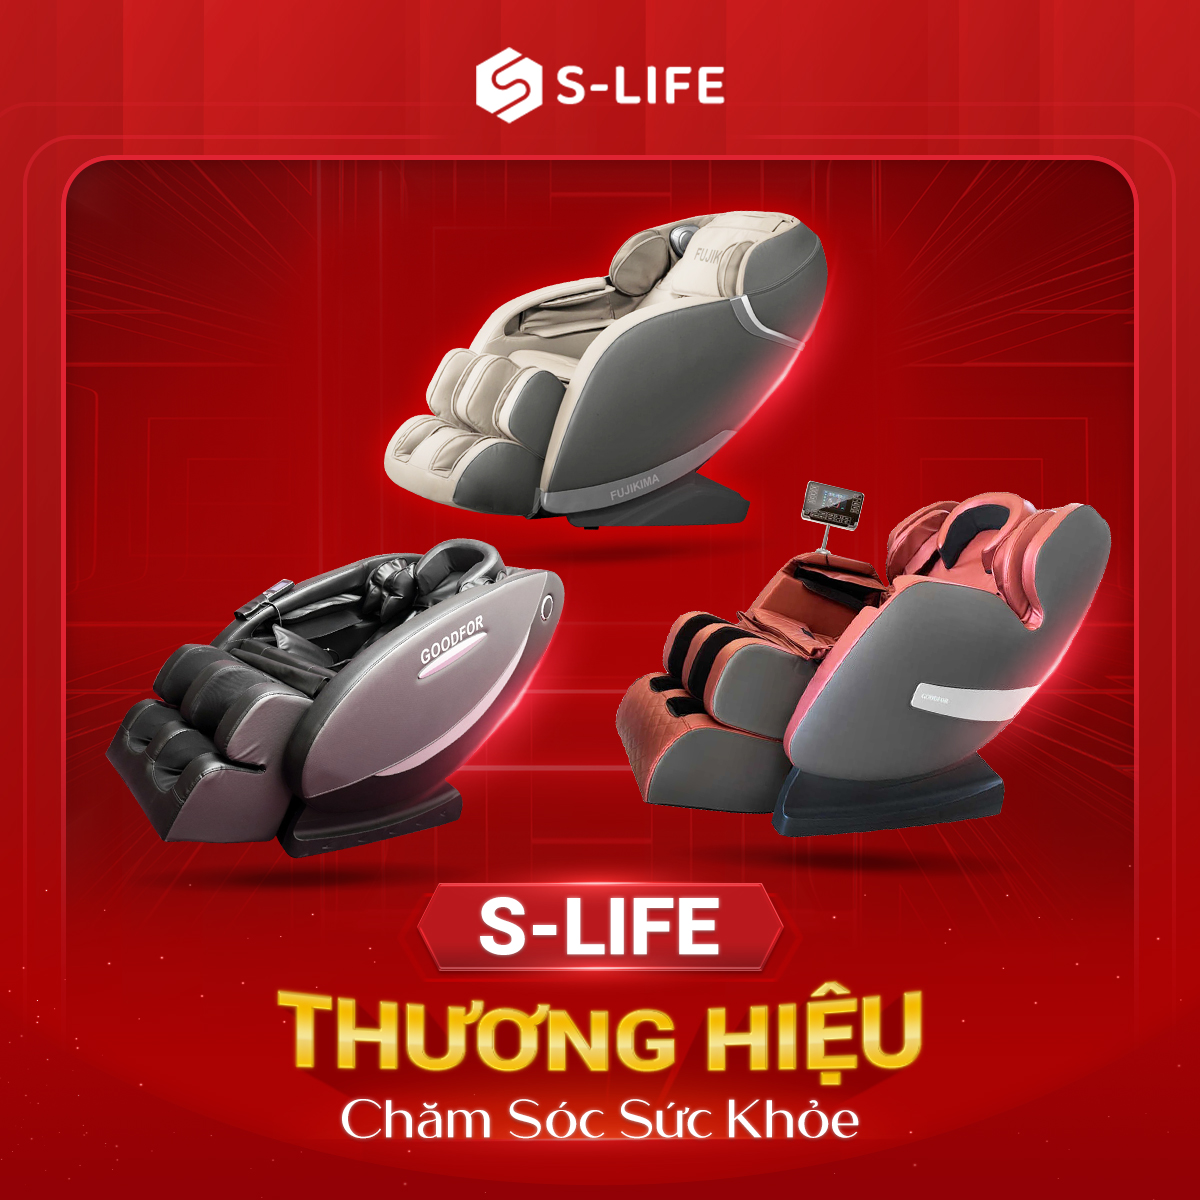 S-Life phân phối hàng loạt dòng sản phẩm ghế massage chất lượng cao